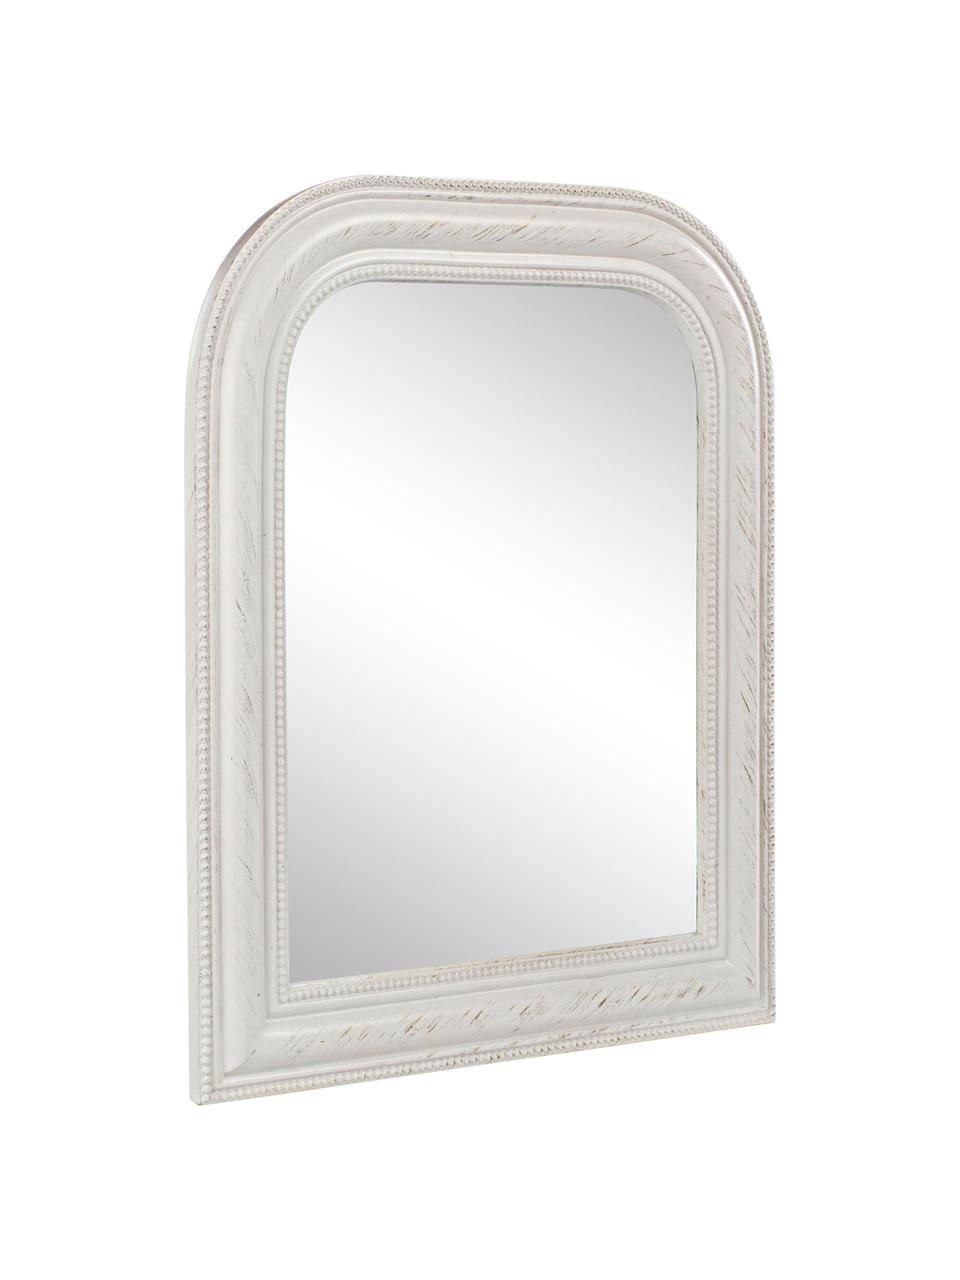 Wandspiegel Mirco mit weißem Paulowniaholzrahmen, Rahmen: Paulowniaholz, Spiegelfläche: Spiegelglas, Weiß, B 50 x H 60 cm